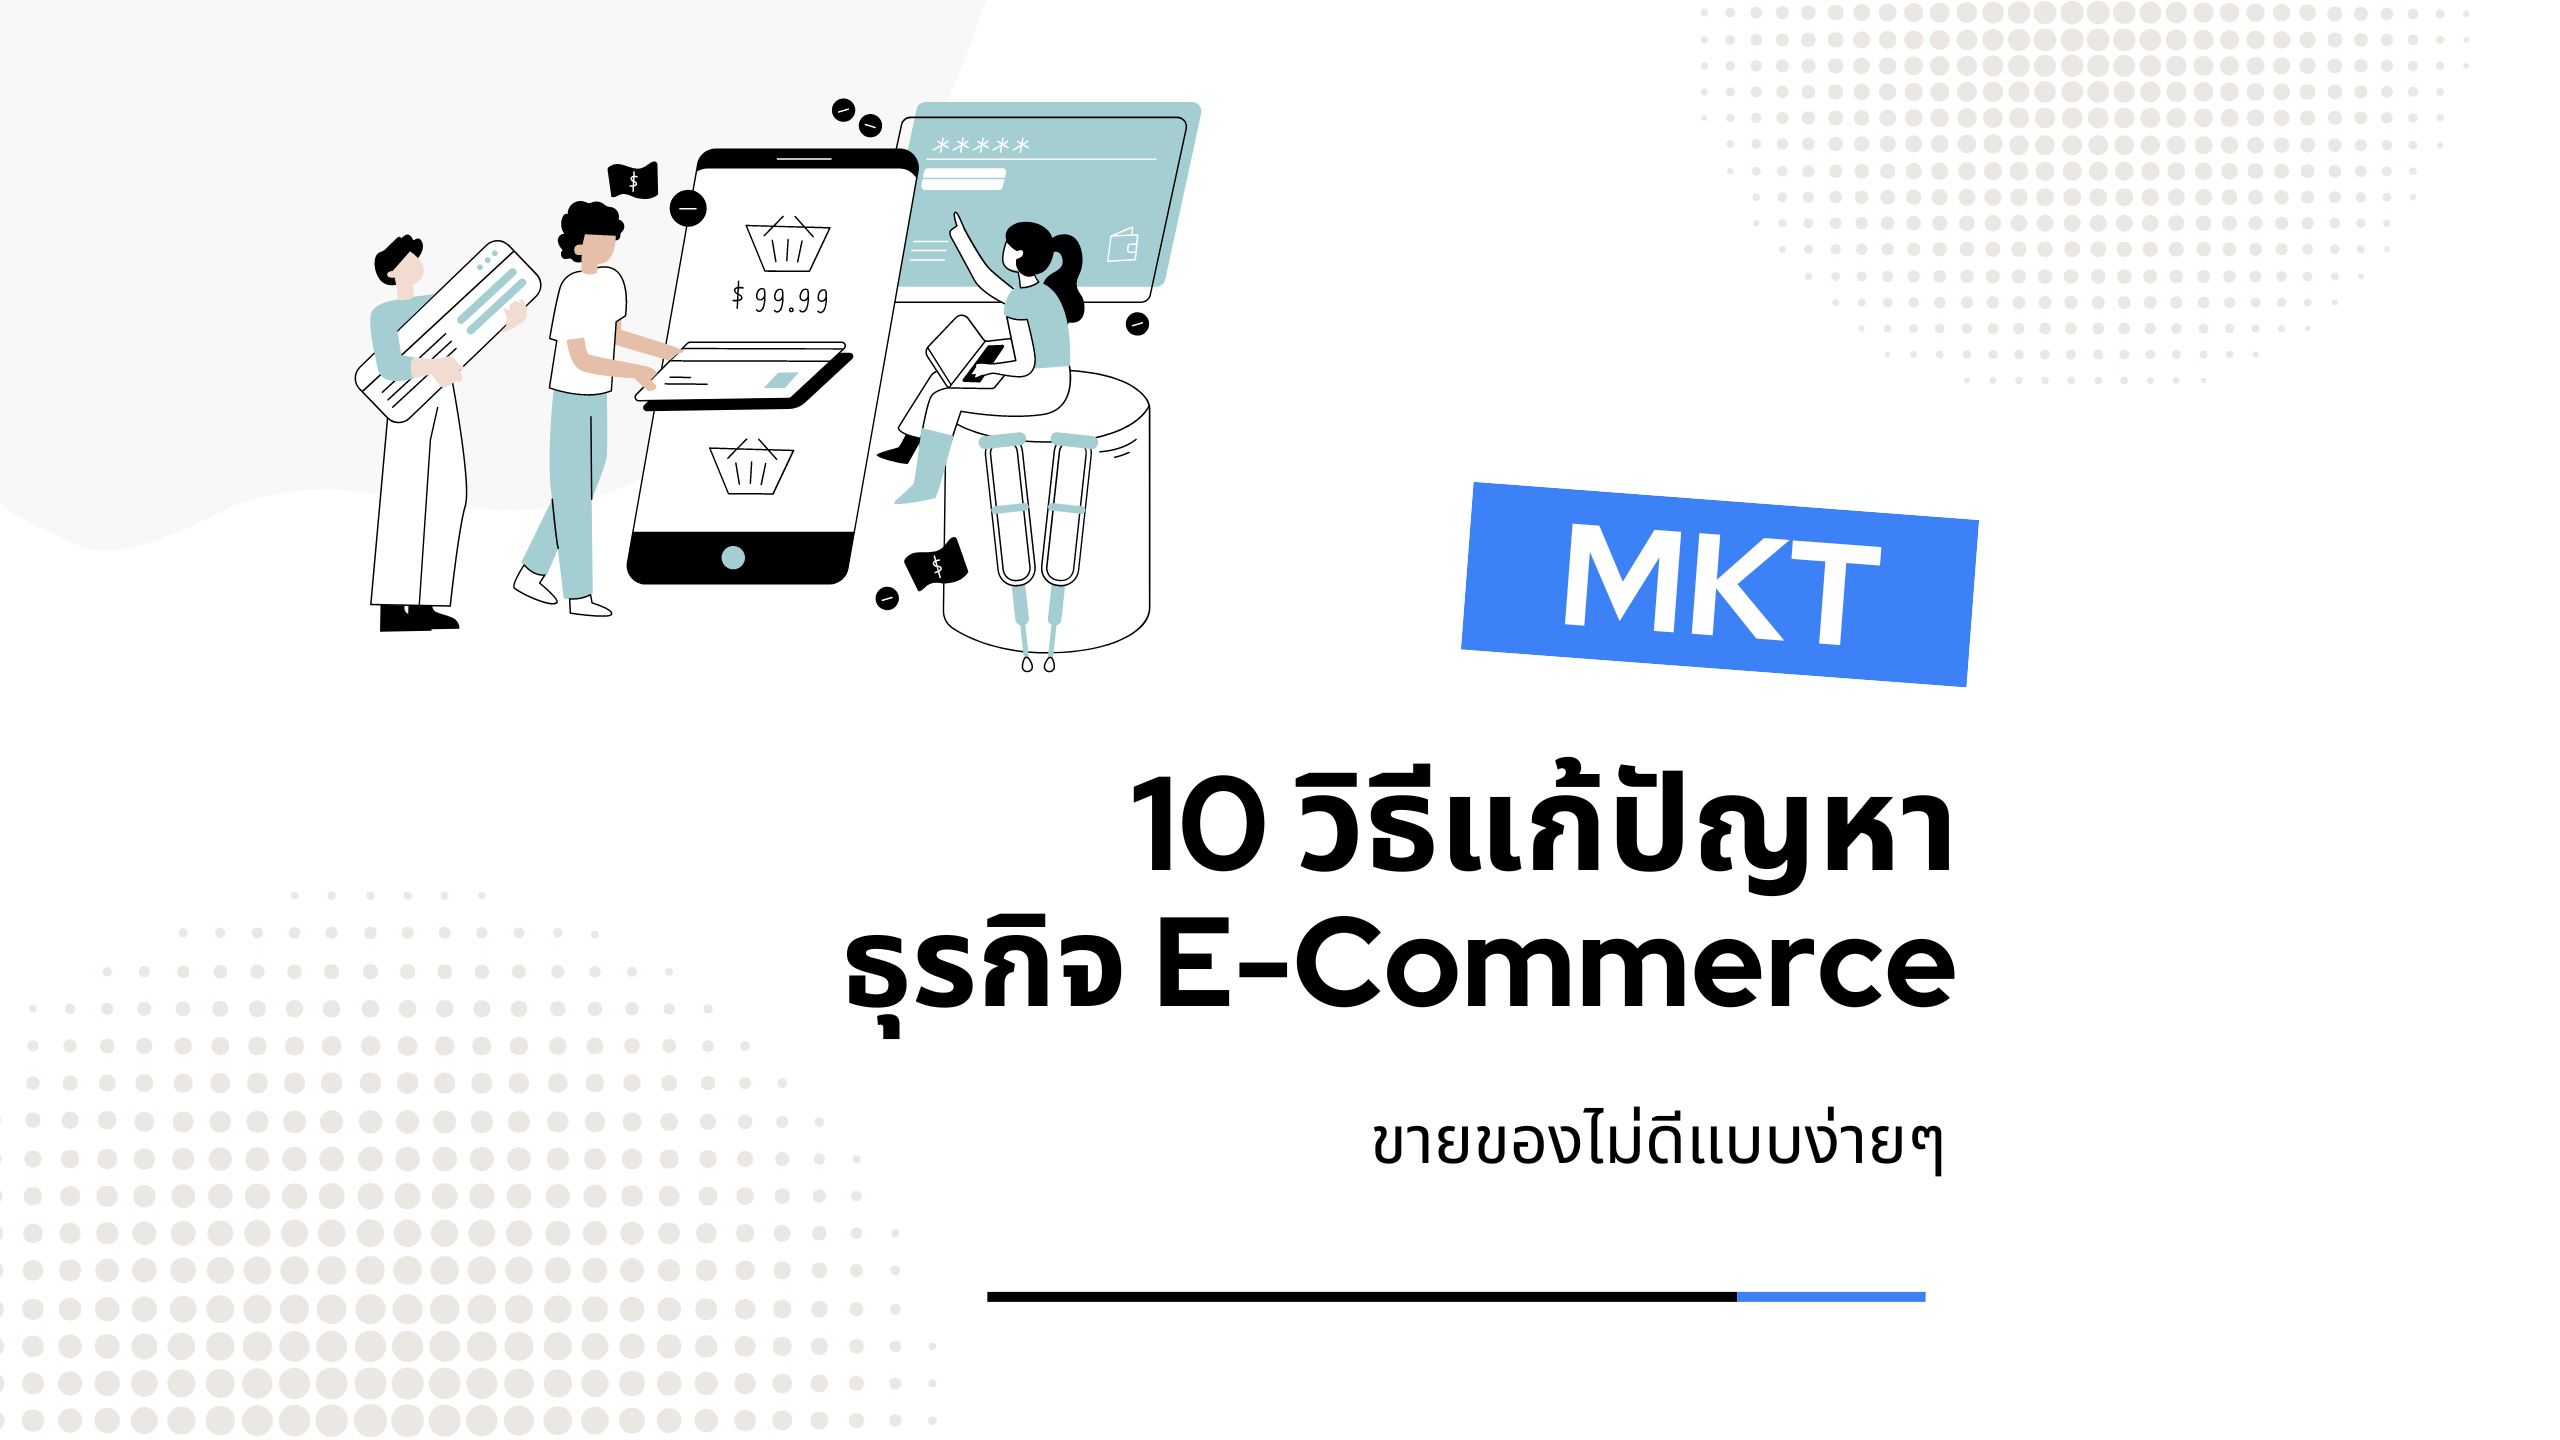 ธุรกิจ E-Commerce